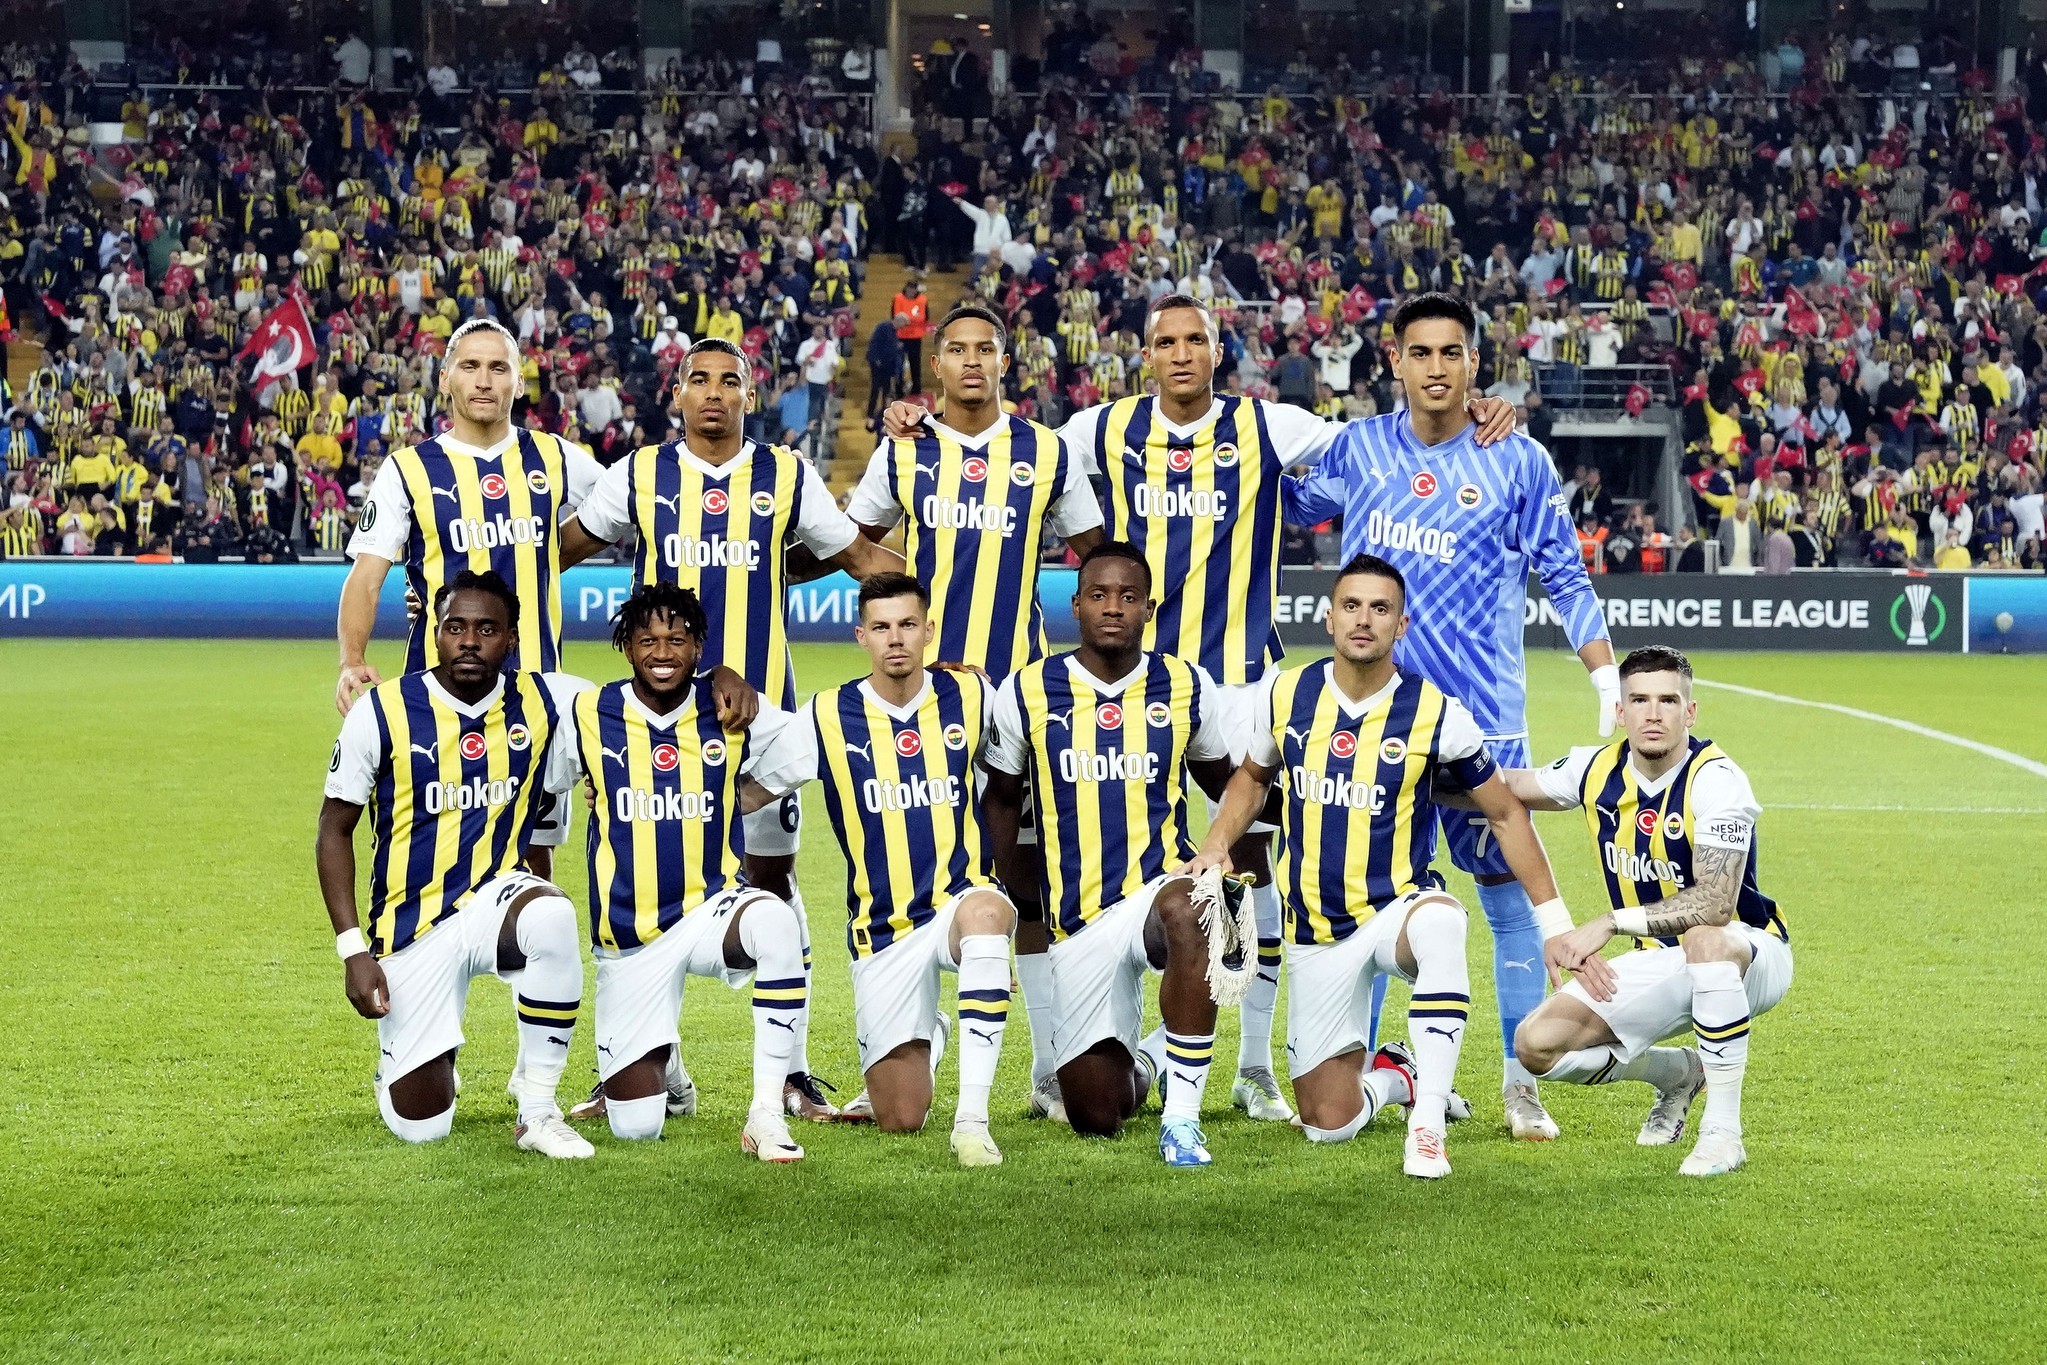 Fenerbahçe avantaj peşinde! İşte İsmail Kartal’ın Olimpiakos maçı muhtemel 11’i